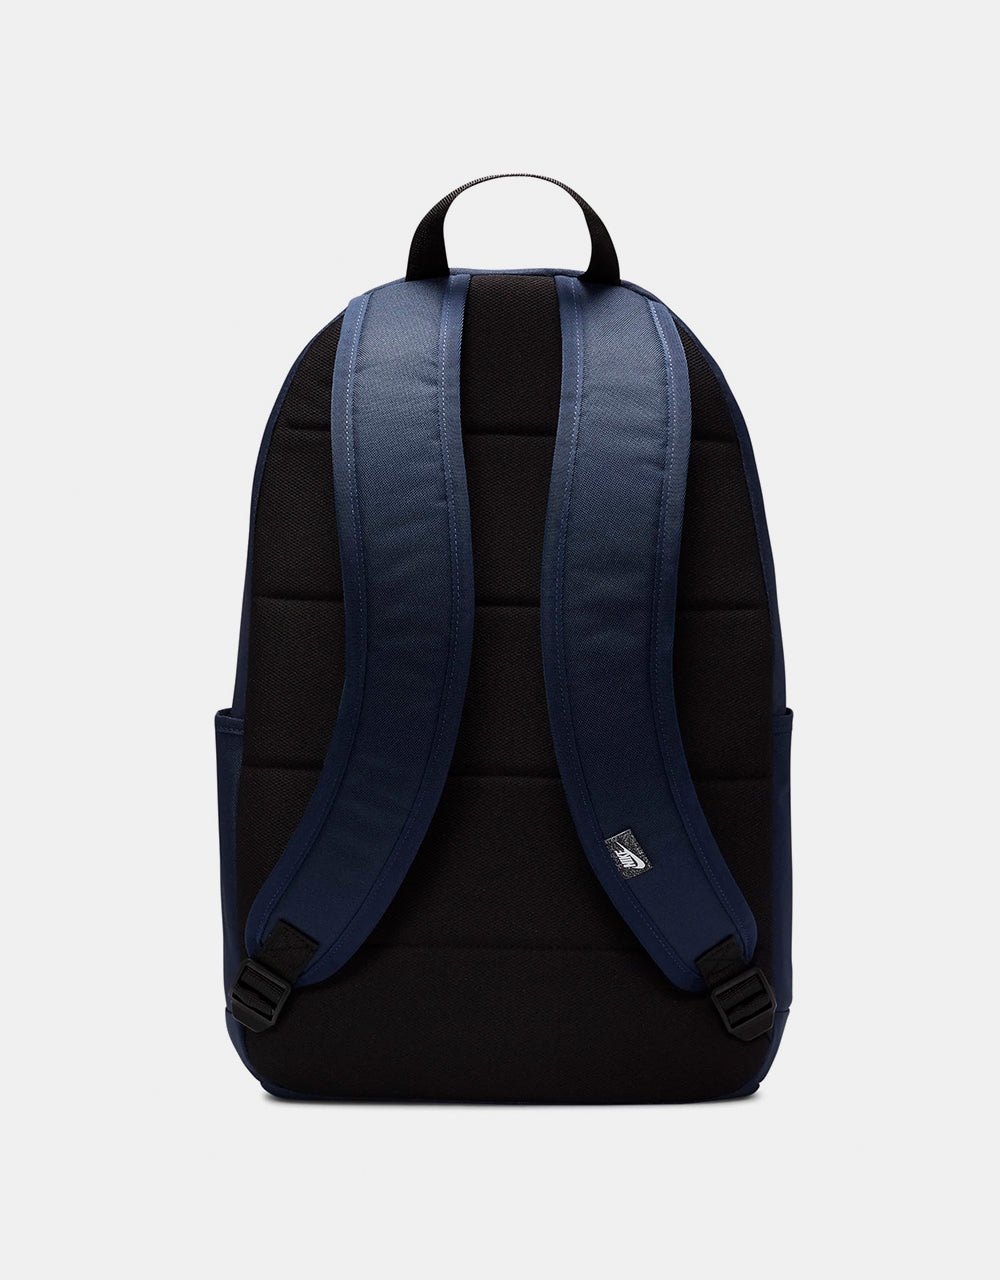 Nike SB Elemental Backpack - Obsidian/Black/White